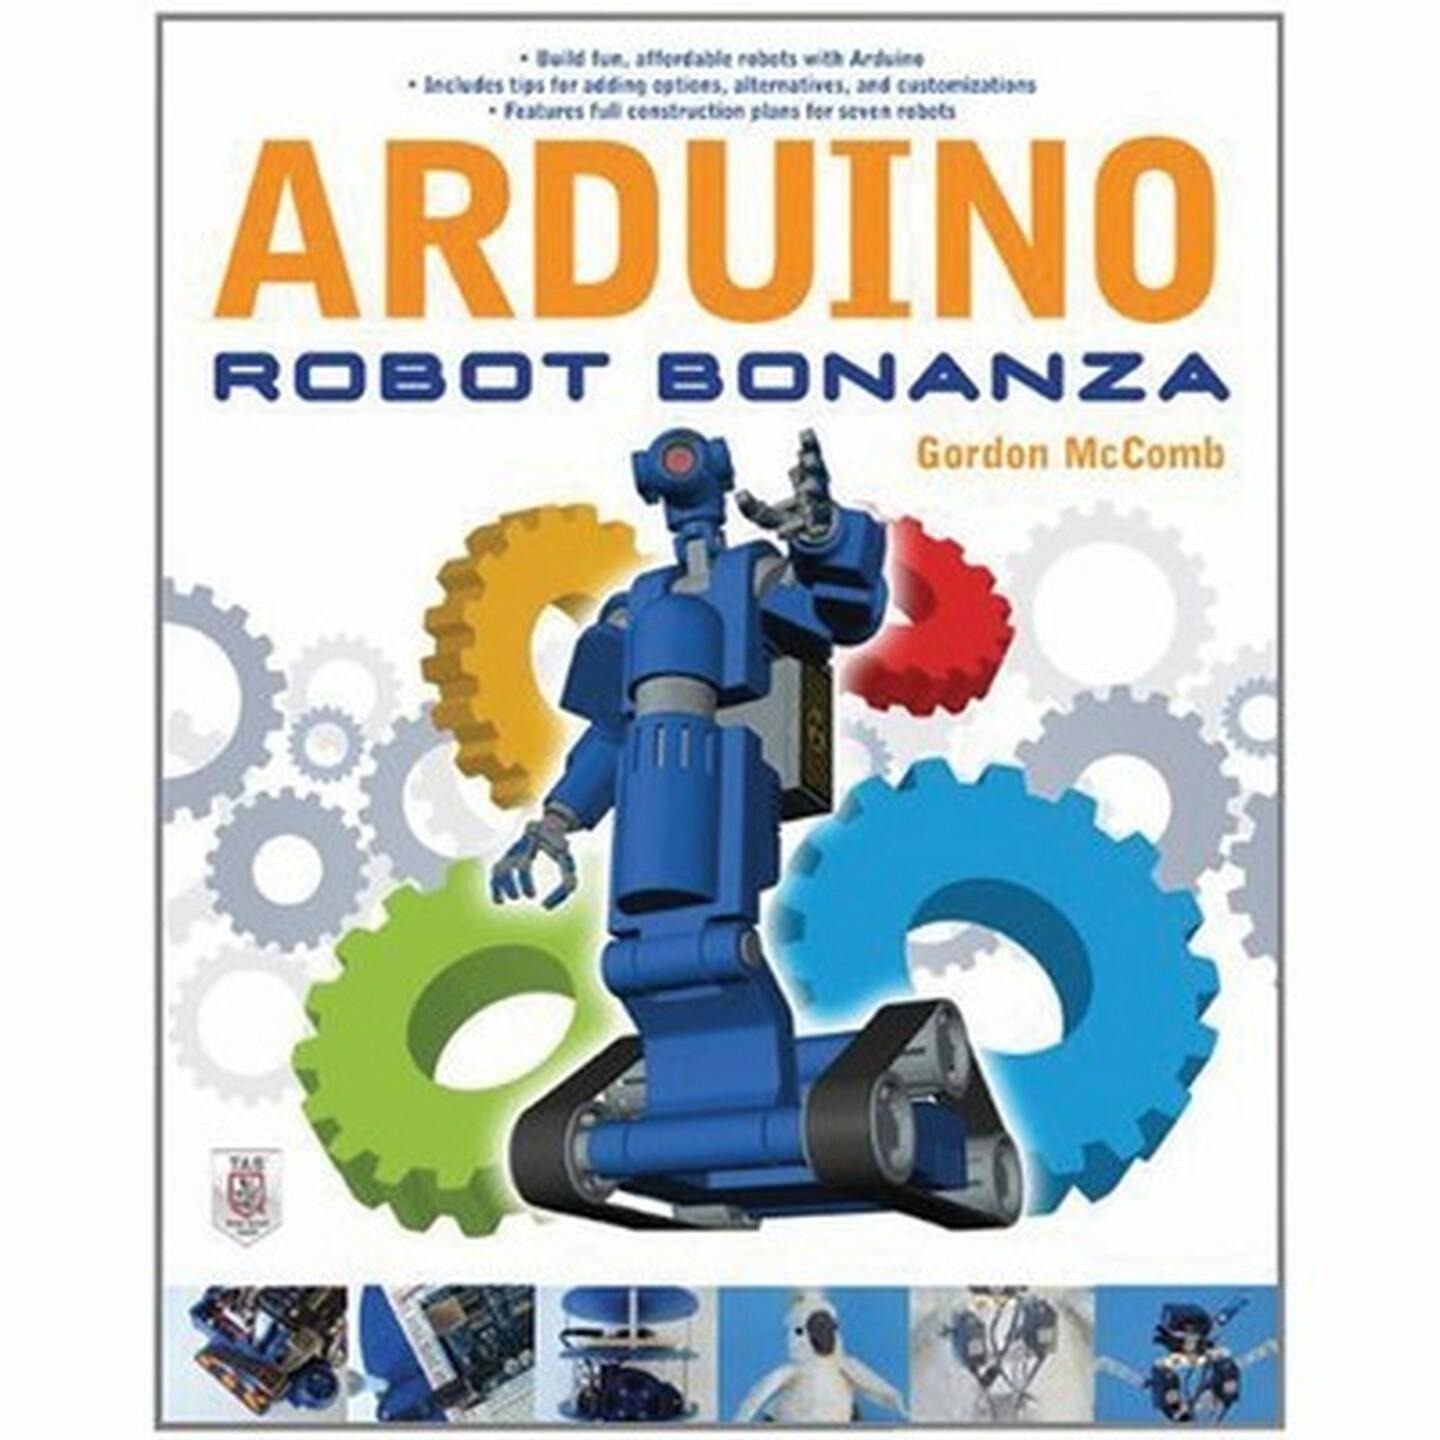 Arduino Robot Bonanza Book